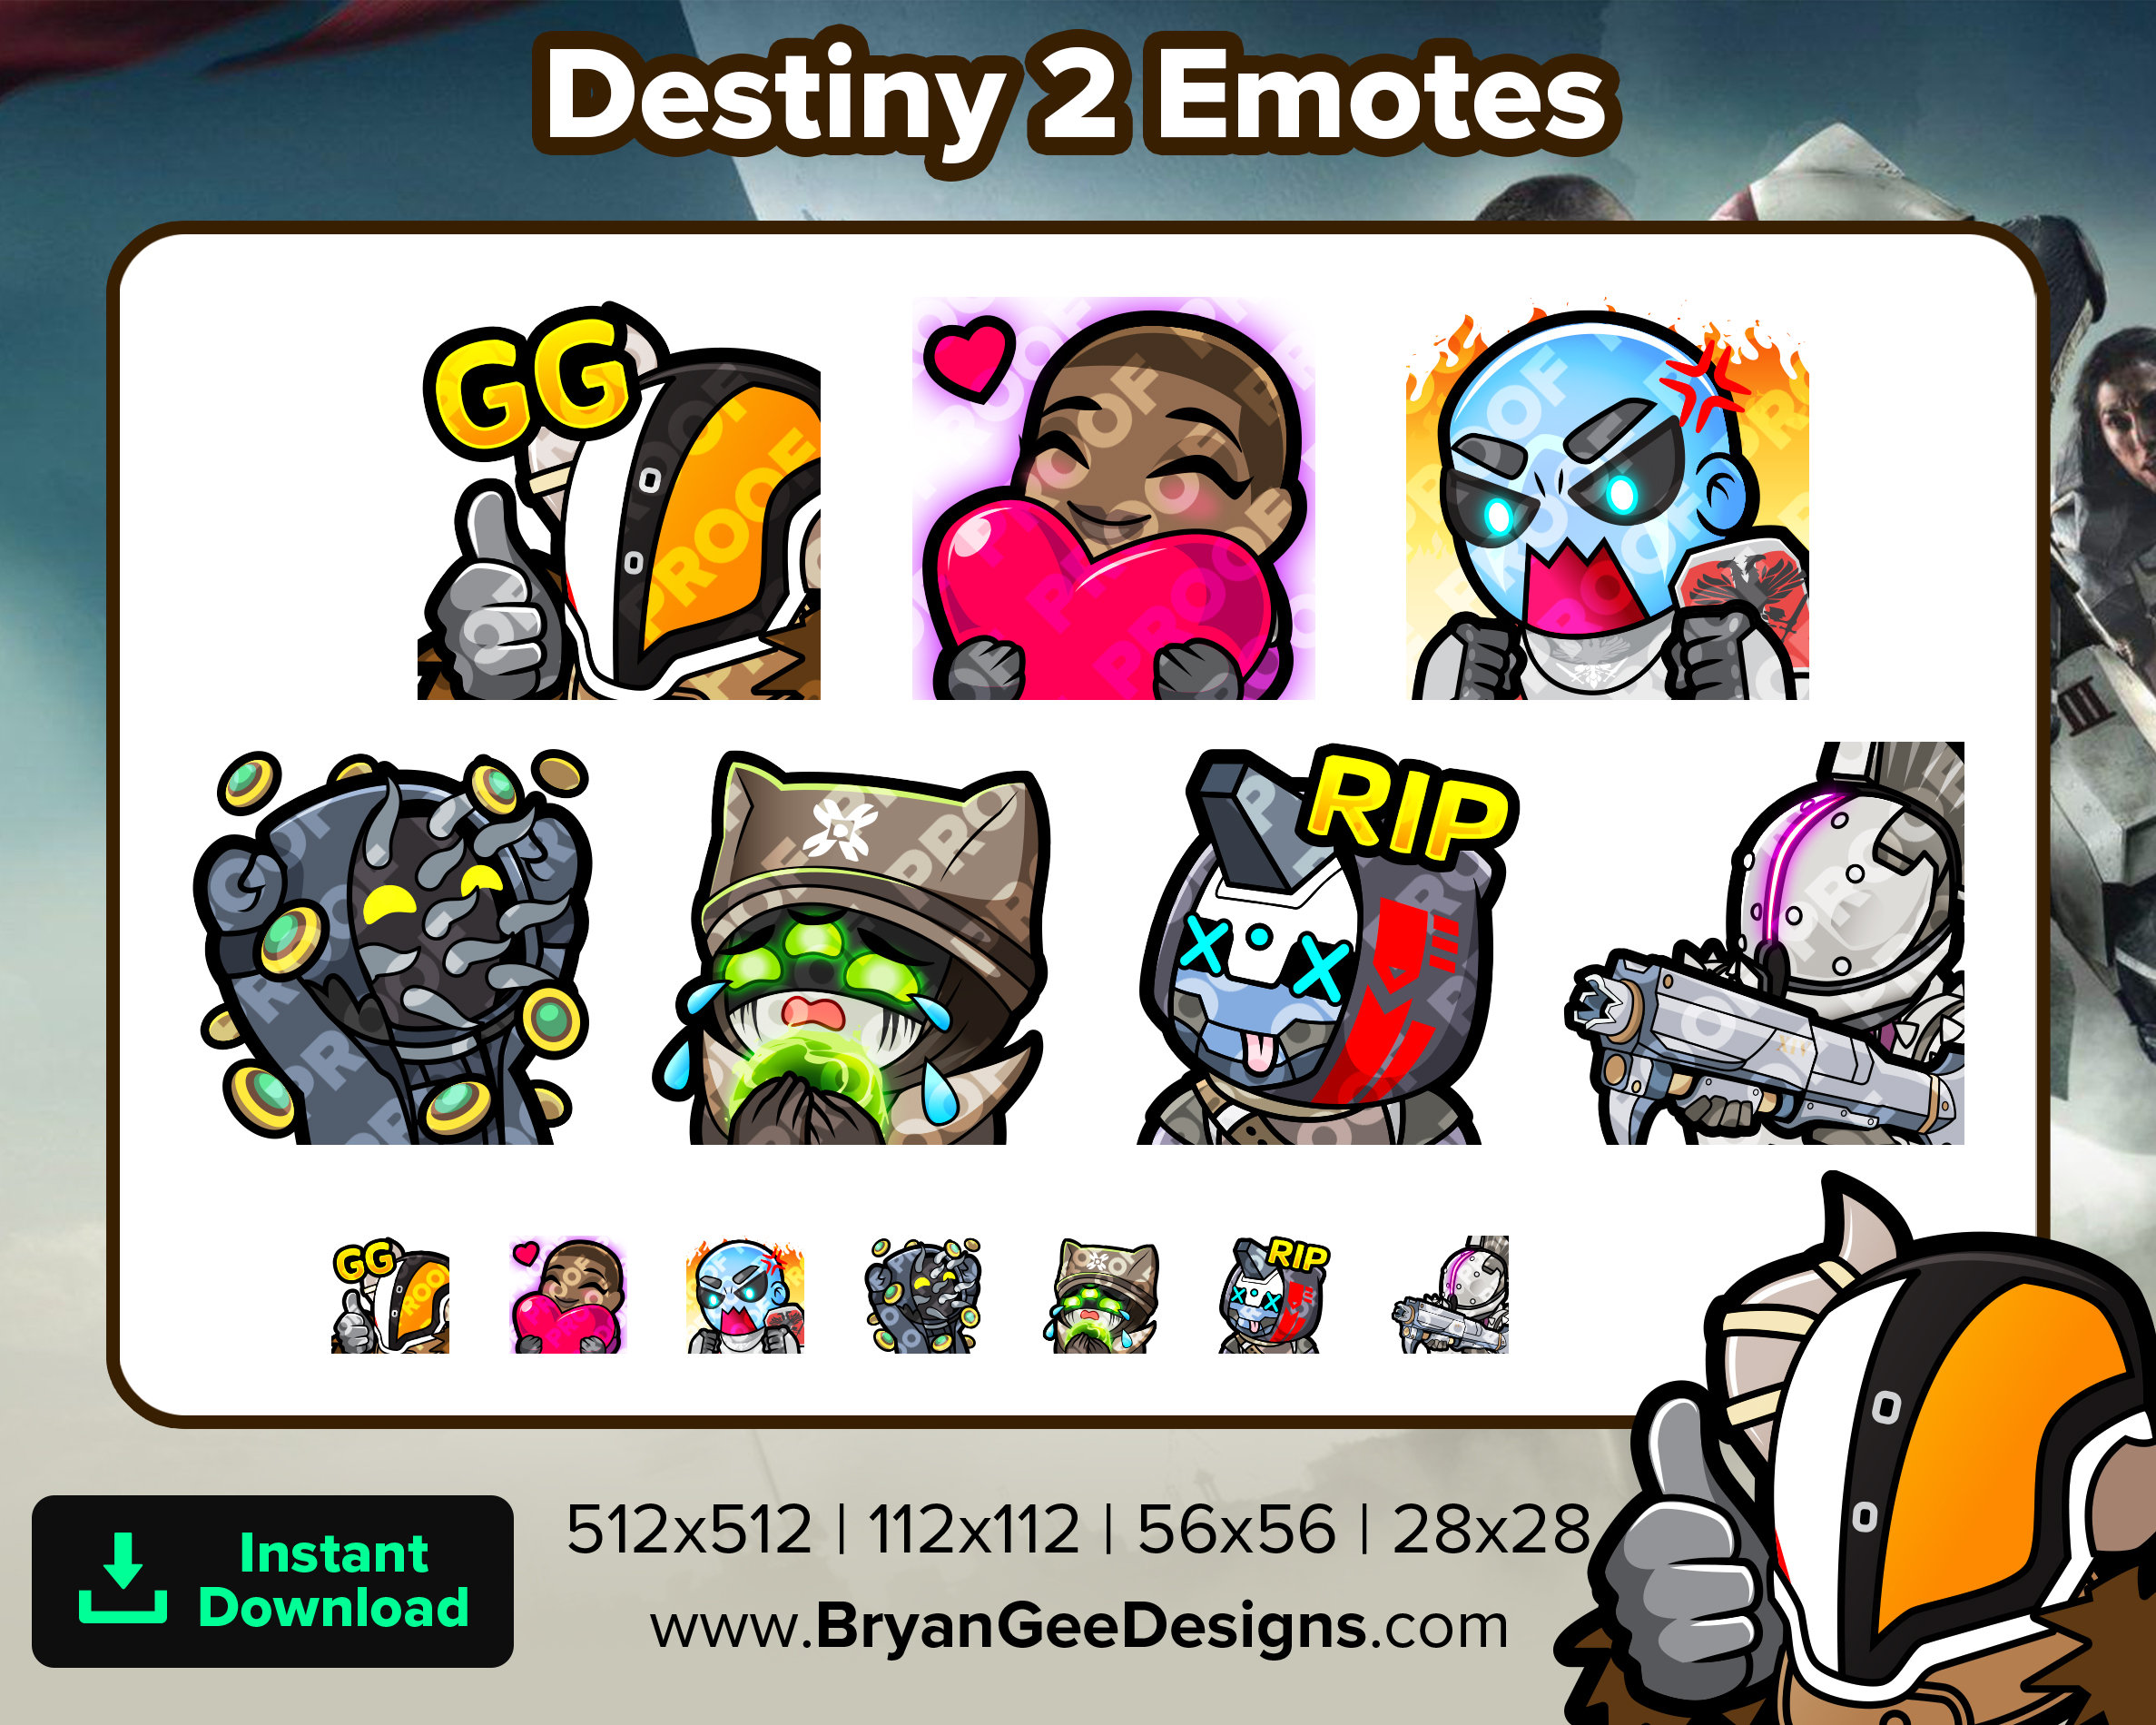 Destiny 2 Emotes Lightfall 3 Emote Pack for Twitch Discord 